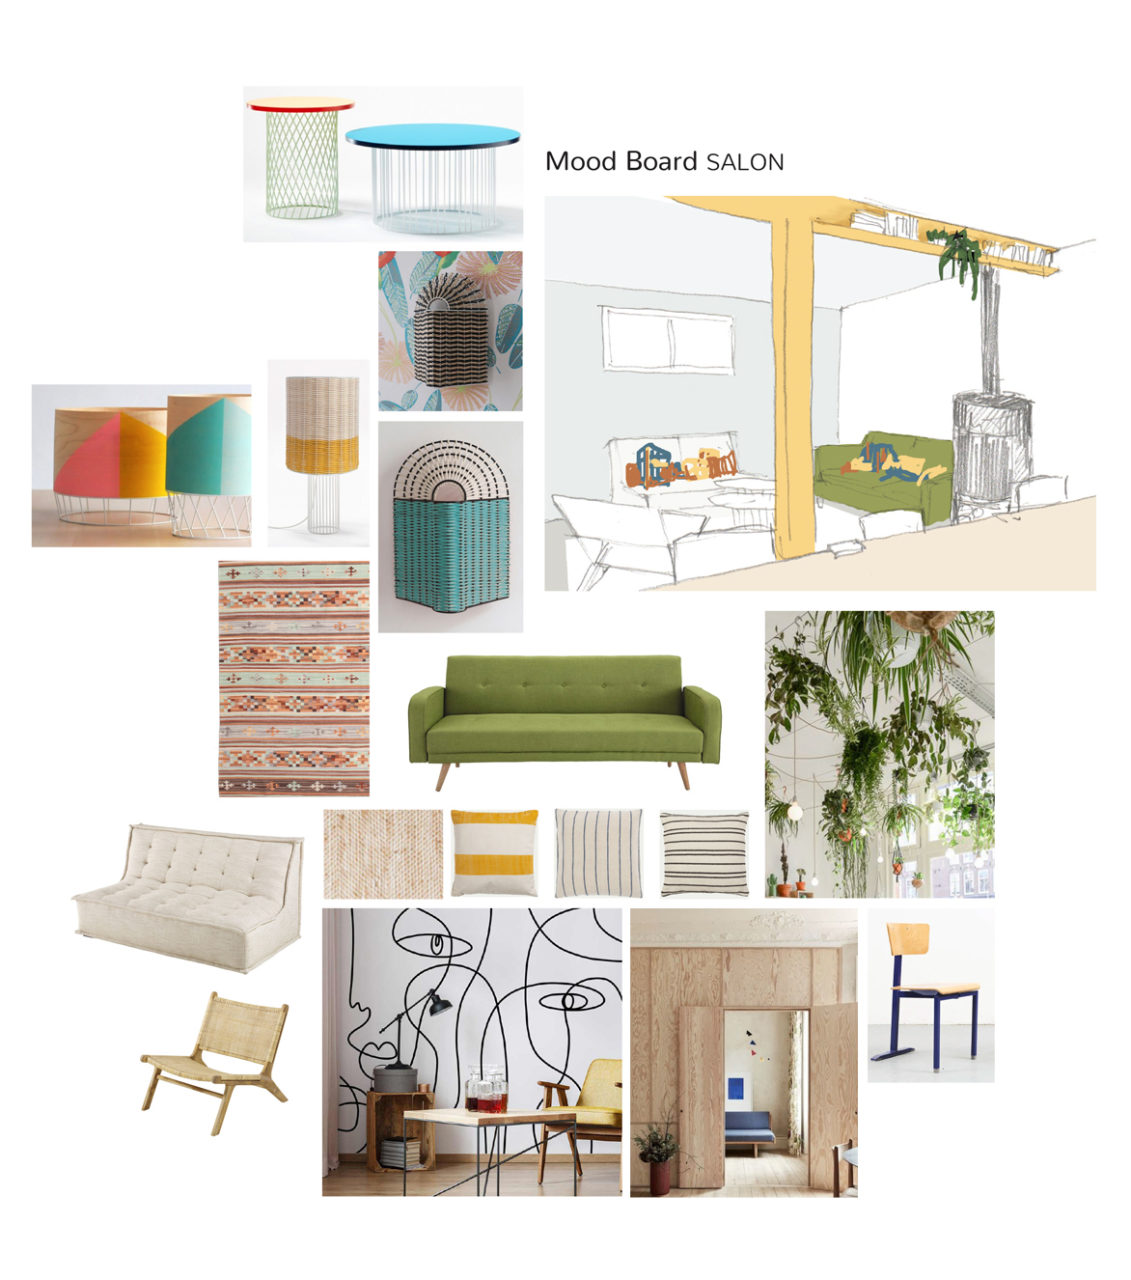 Mood Board et mobiliers du projet en cours de co-living Villejuif, ses teintes gaies et vives sur fond de parois bois et la pré-visualisation de l'espace salon.